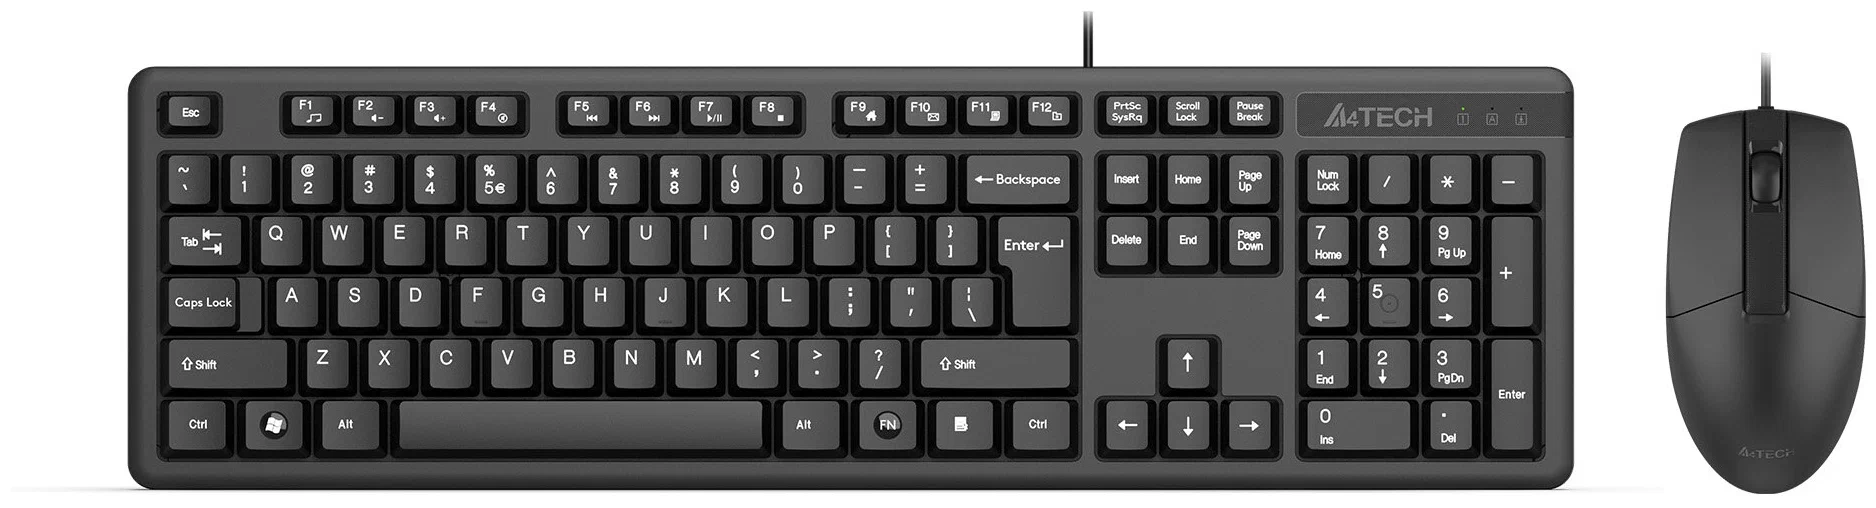 Клавиатура+мышь A4Tech KK-3330S <провод USB 1.5м/мышь 3кл 1000dpi/водозащита/черный/USB>